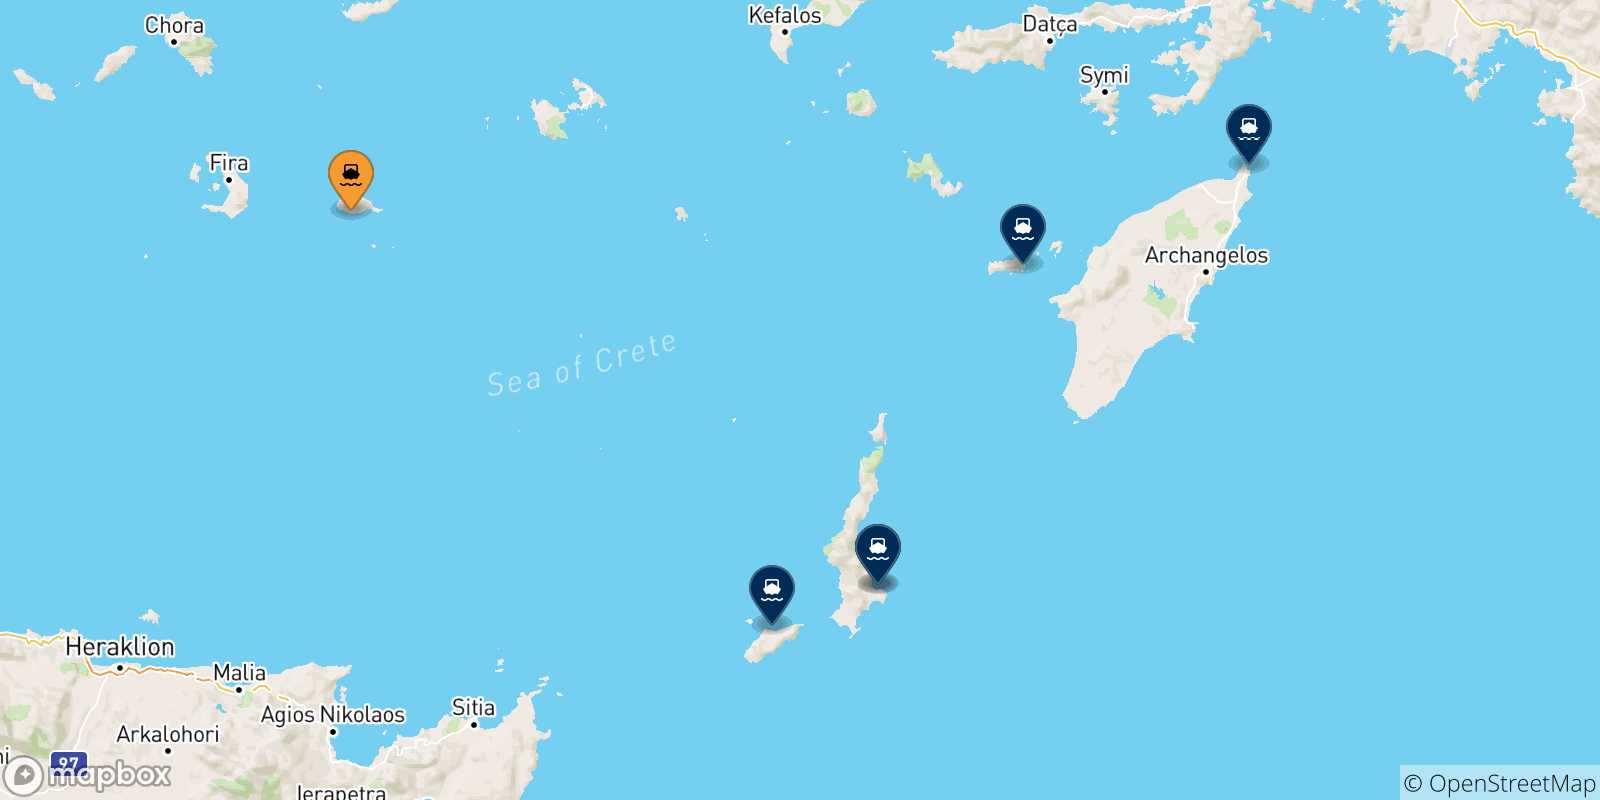 Mappa delle possibili rotte tra Anafi e le Isole Dodecaneso